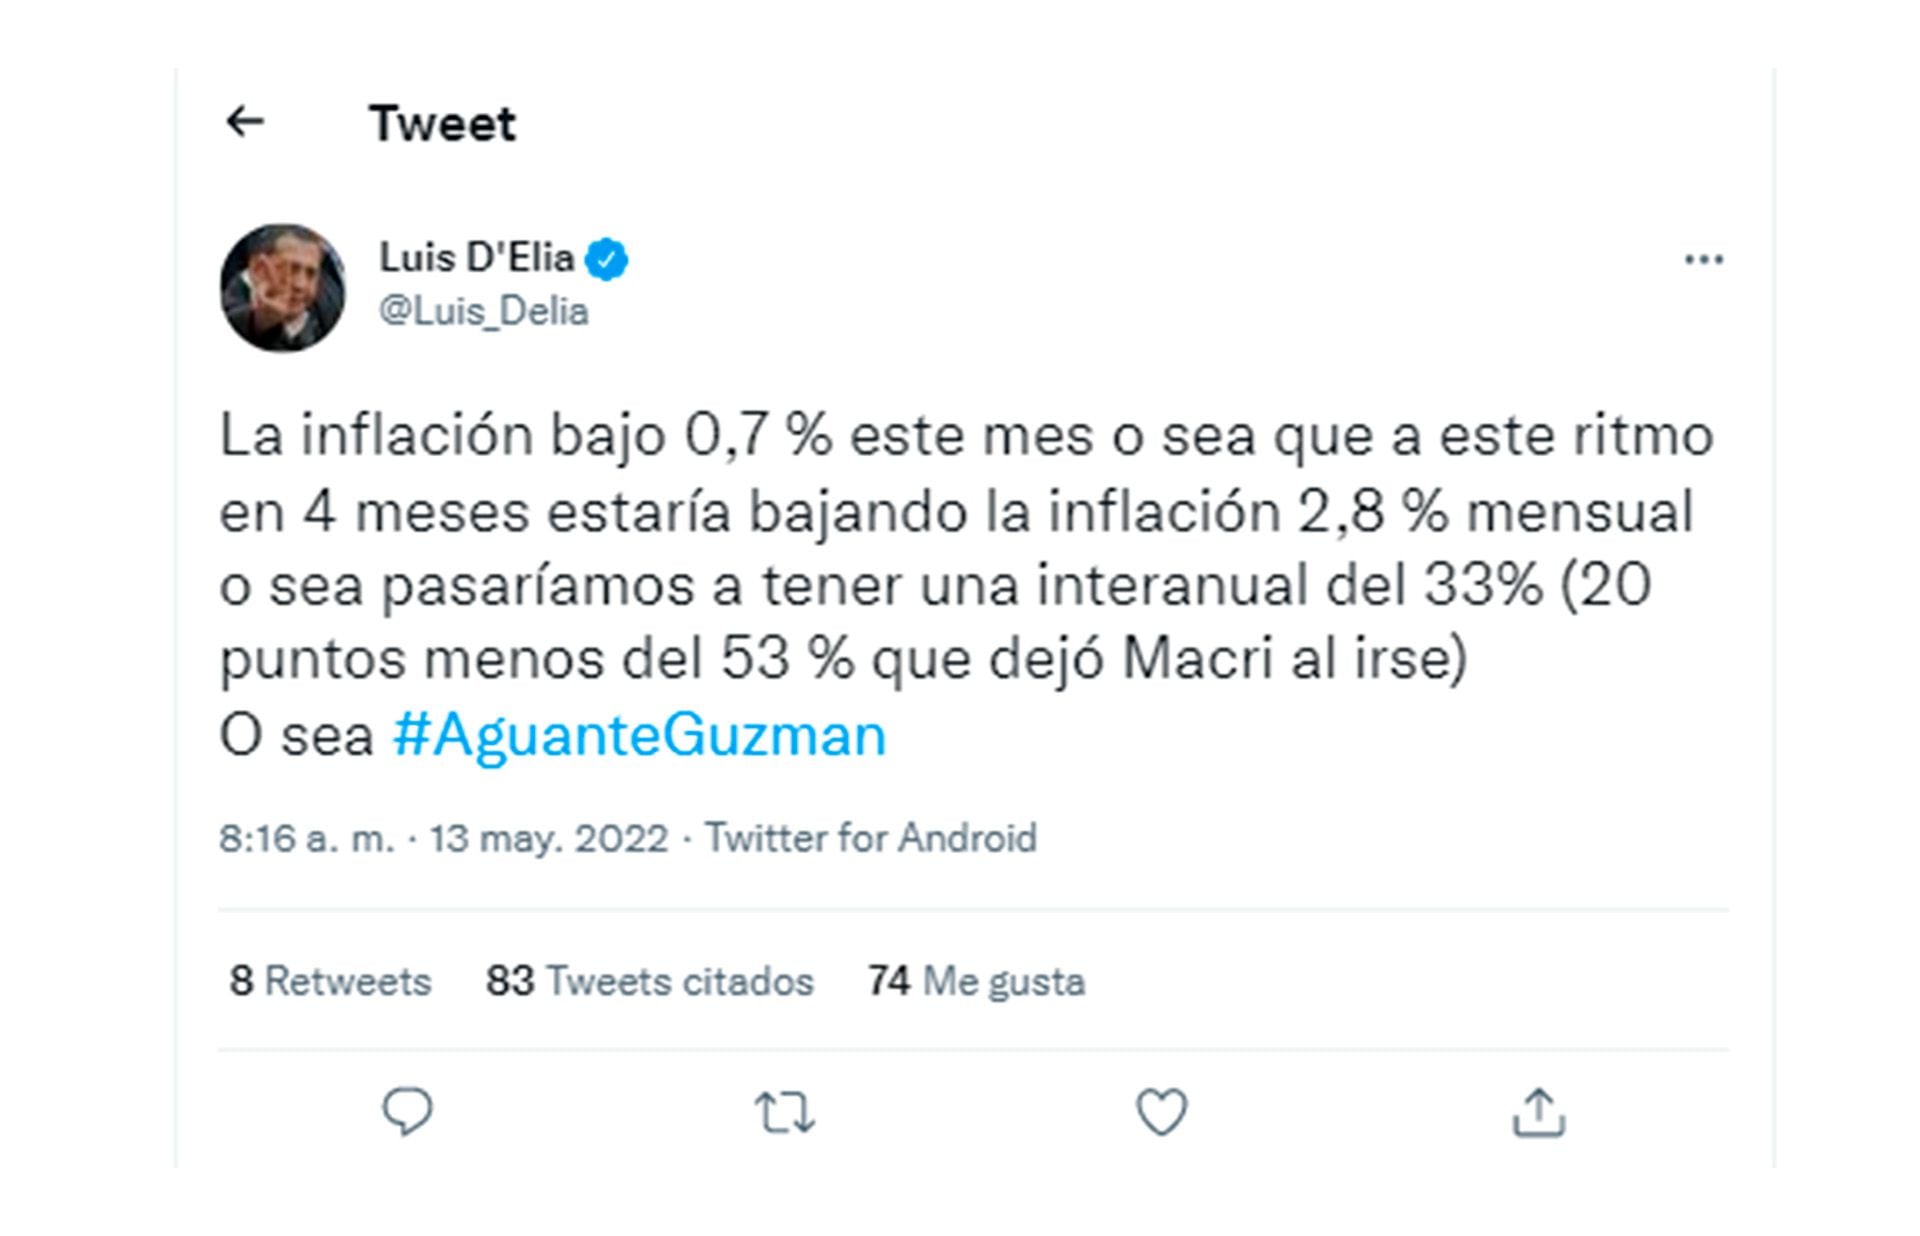 Luis Delia Twitter - Tweet - La inflación